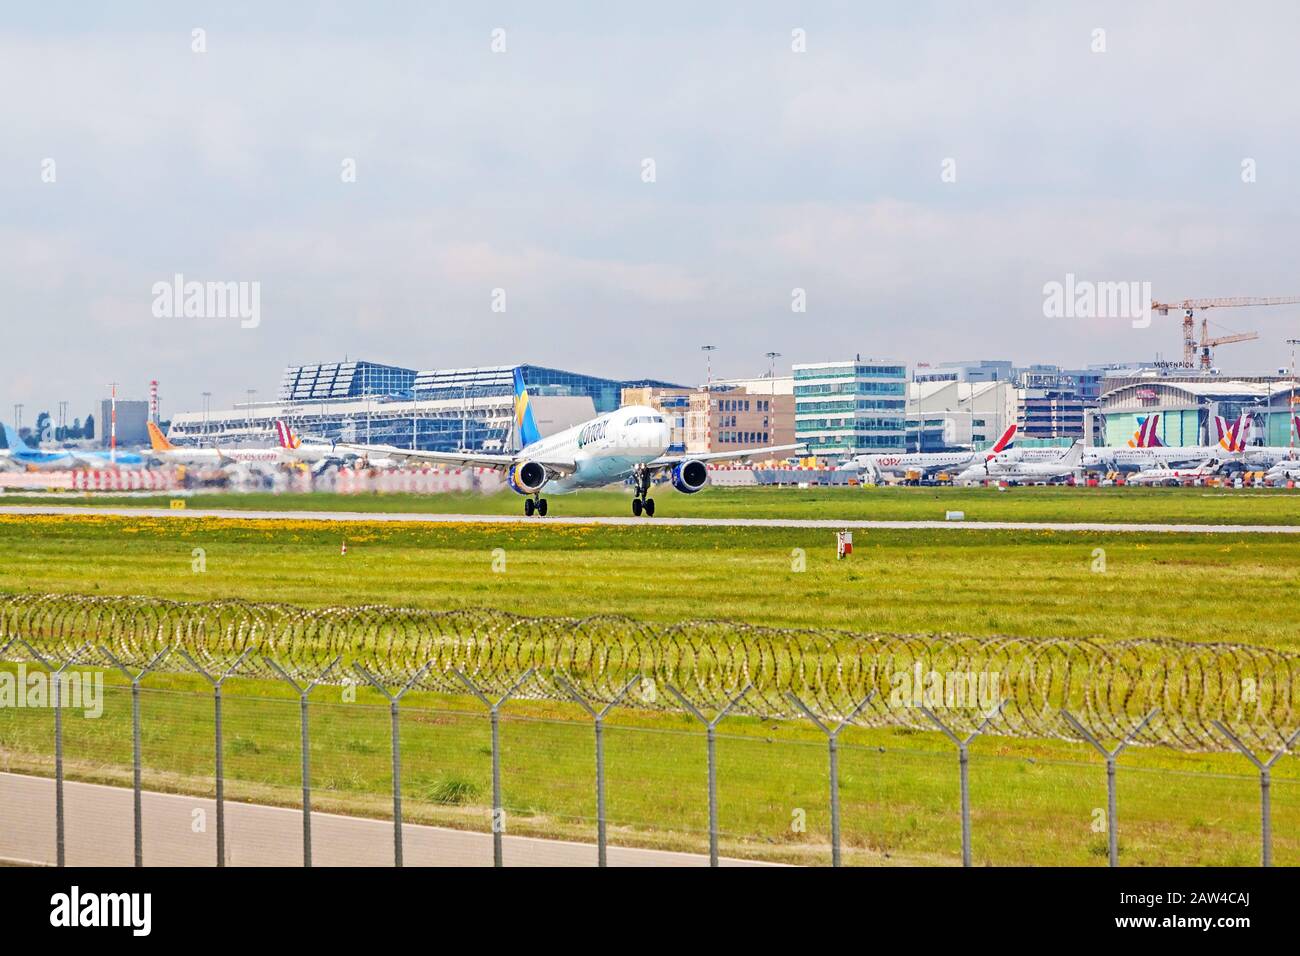 Stoccarda, Germania - 29 aprile 2017: Airbus Airplane A320 da Condor al decollo dalla pista - aeroporto terminal Stoccarda in background - prato verde Foto Stock